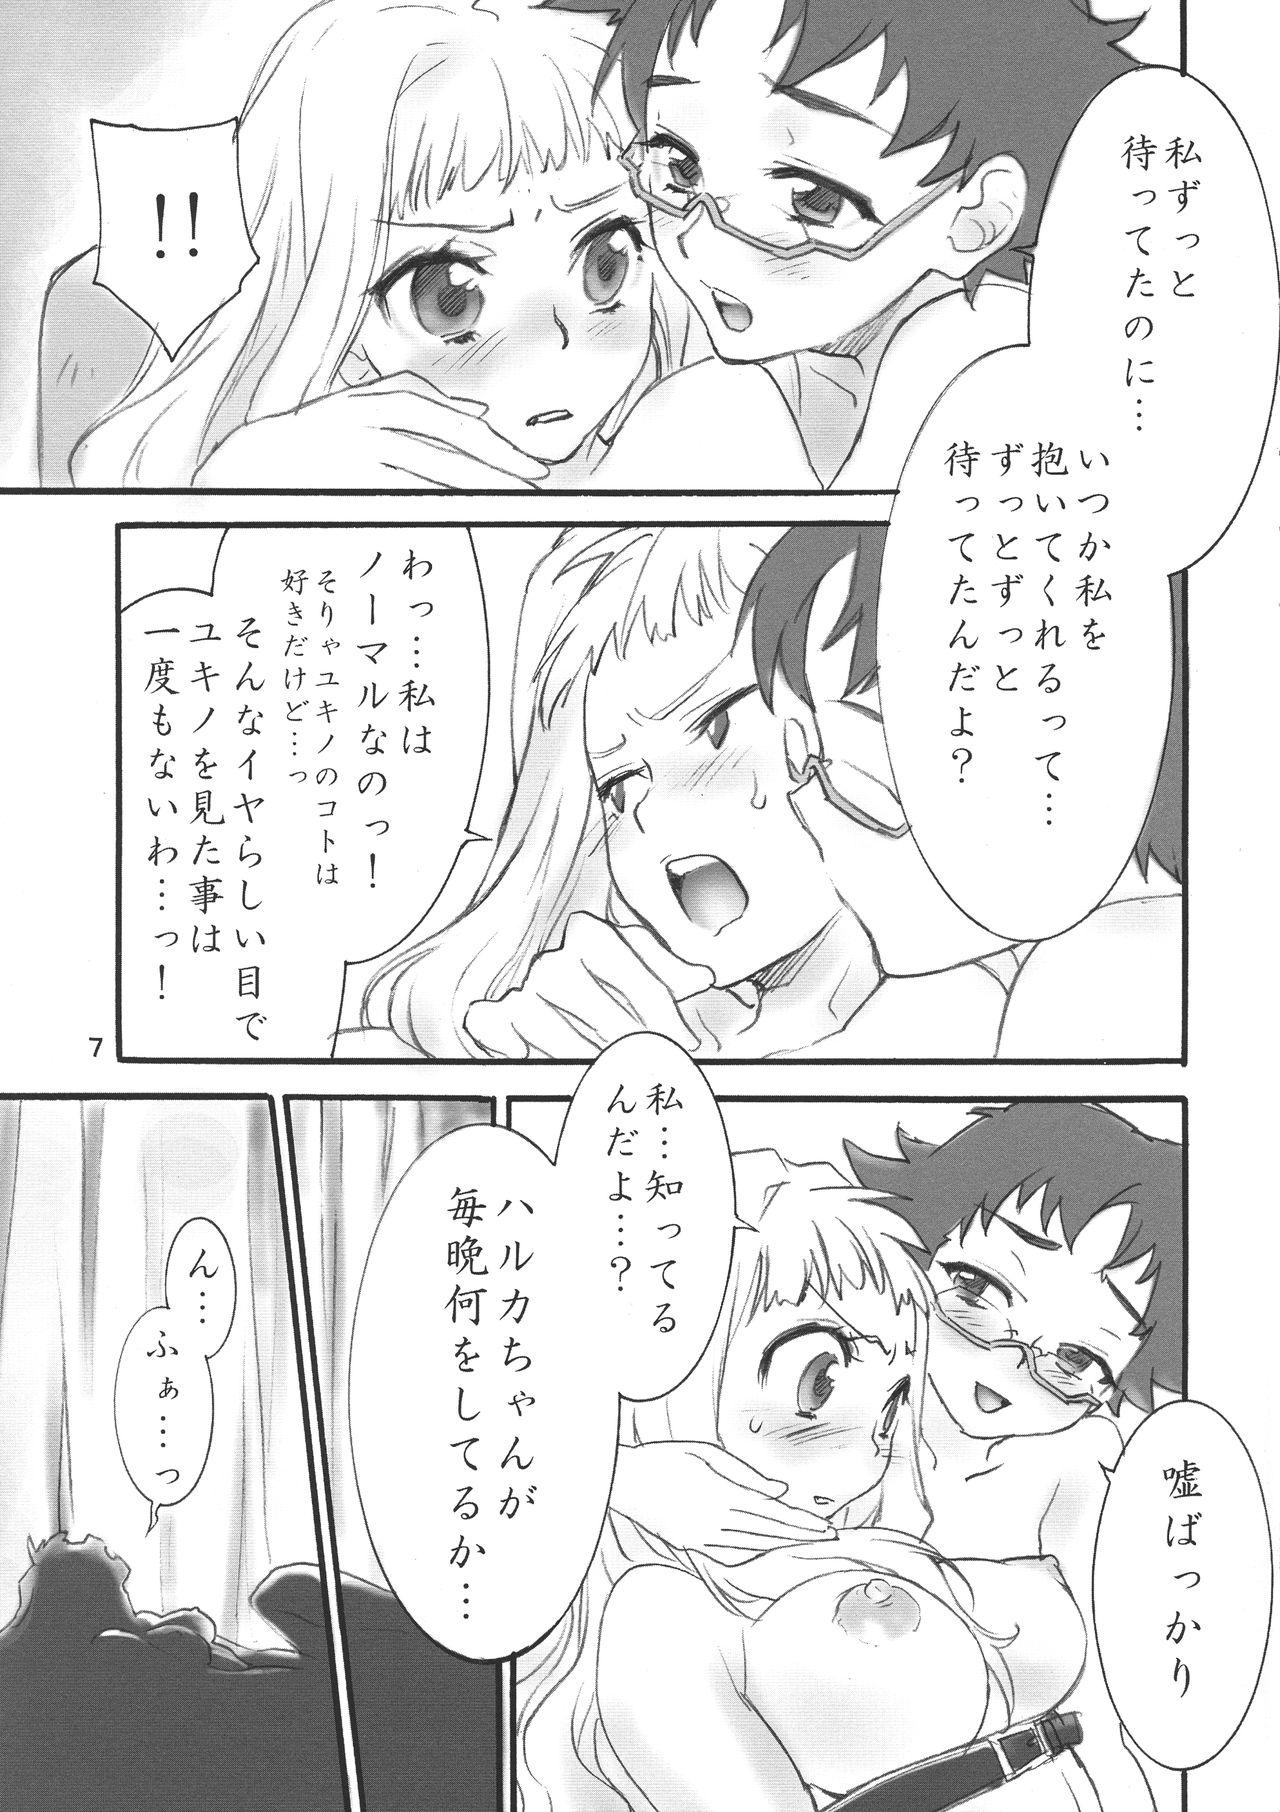 Strap On En - Gundam seed destiny Ichigo 100 Mai hime Lesbians - Page 7